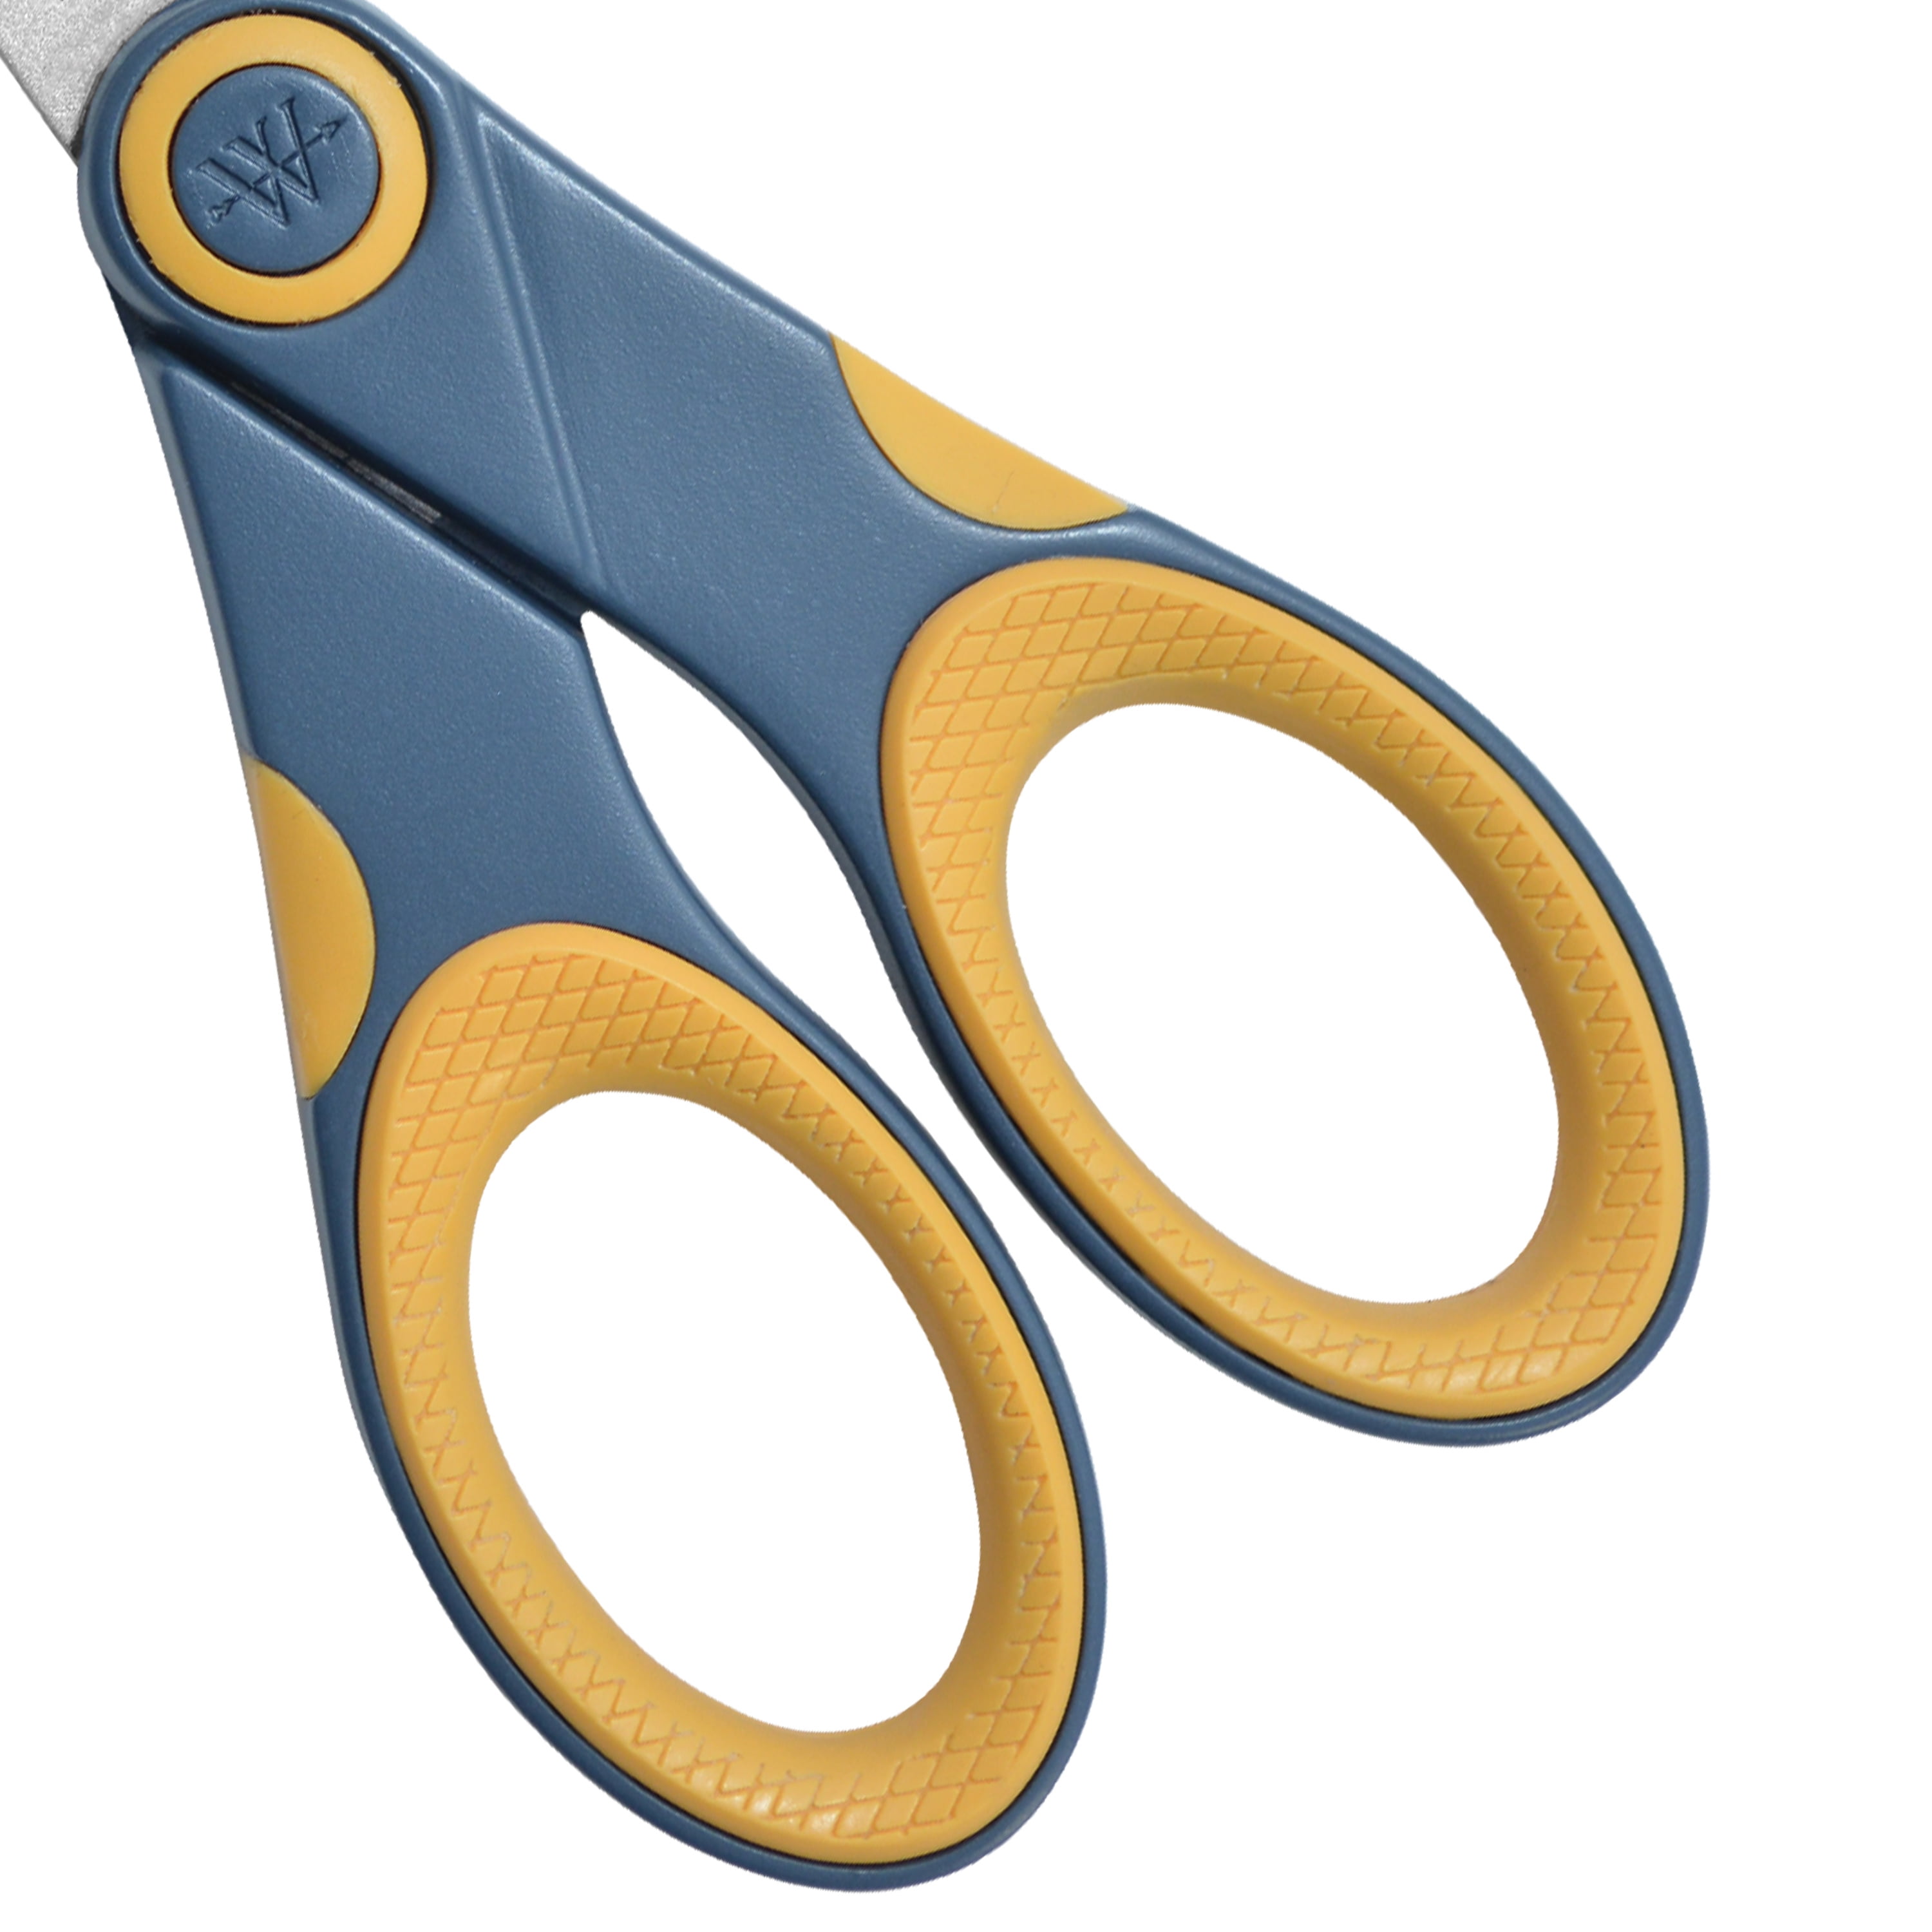 Westcott® Titanium Bonded® 7 Straight Scissors